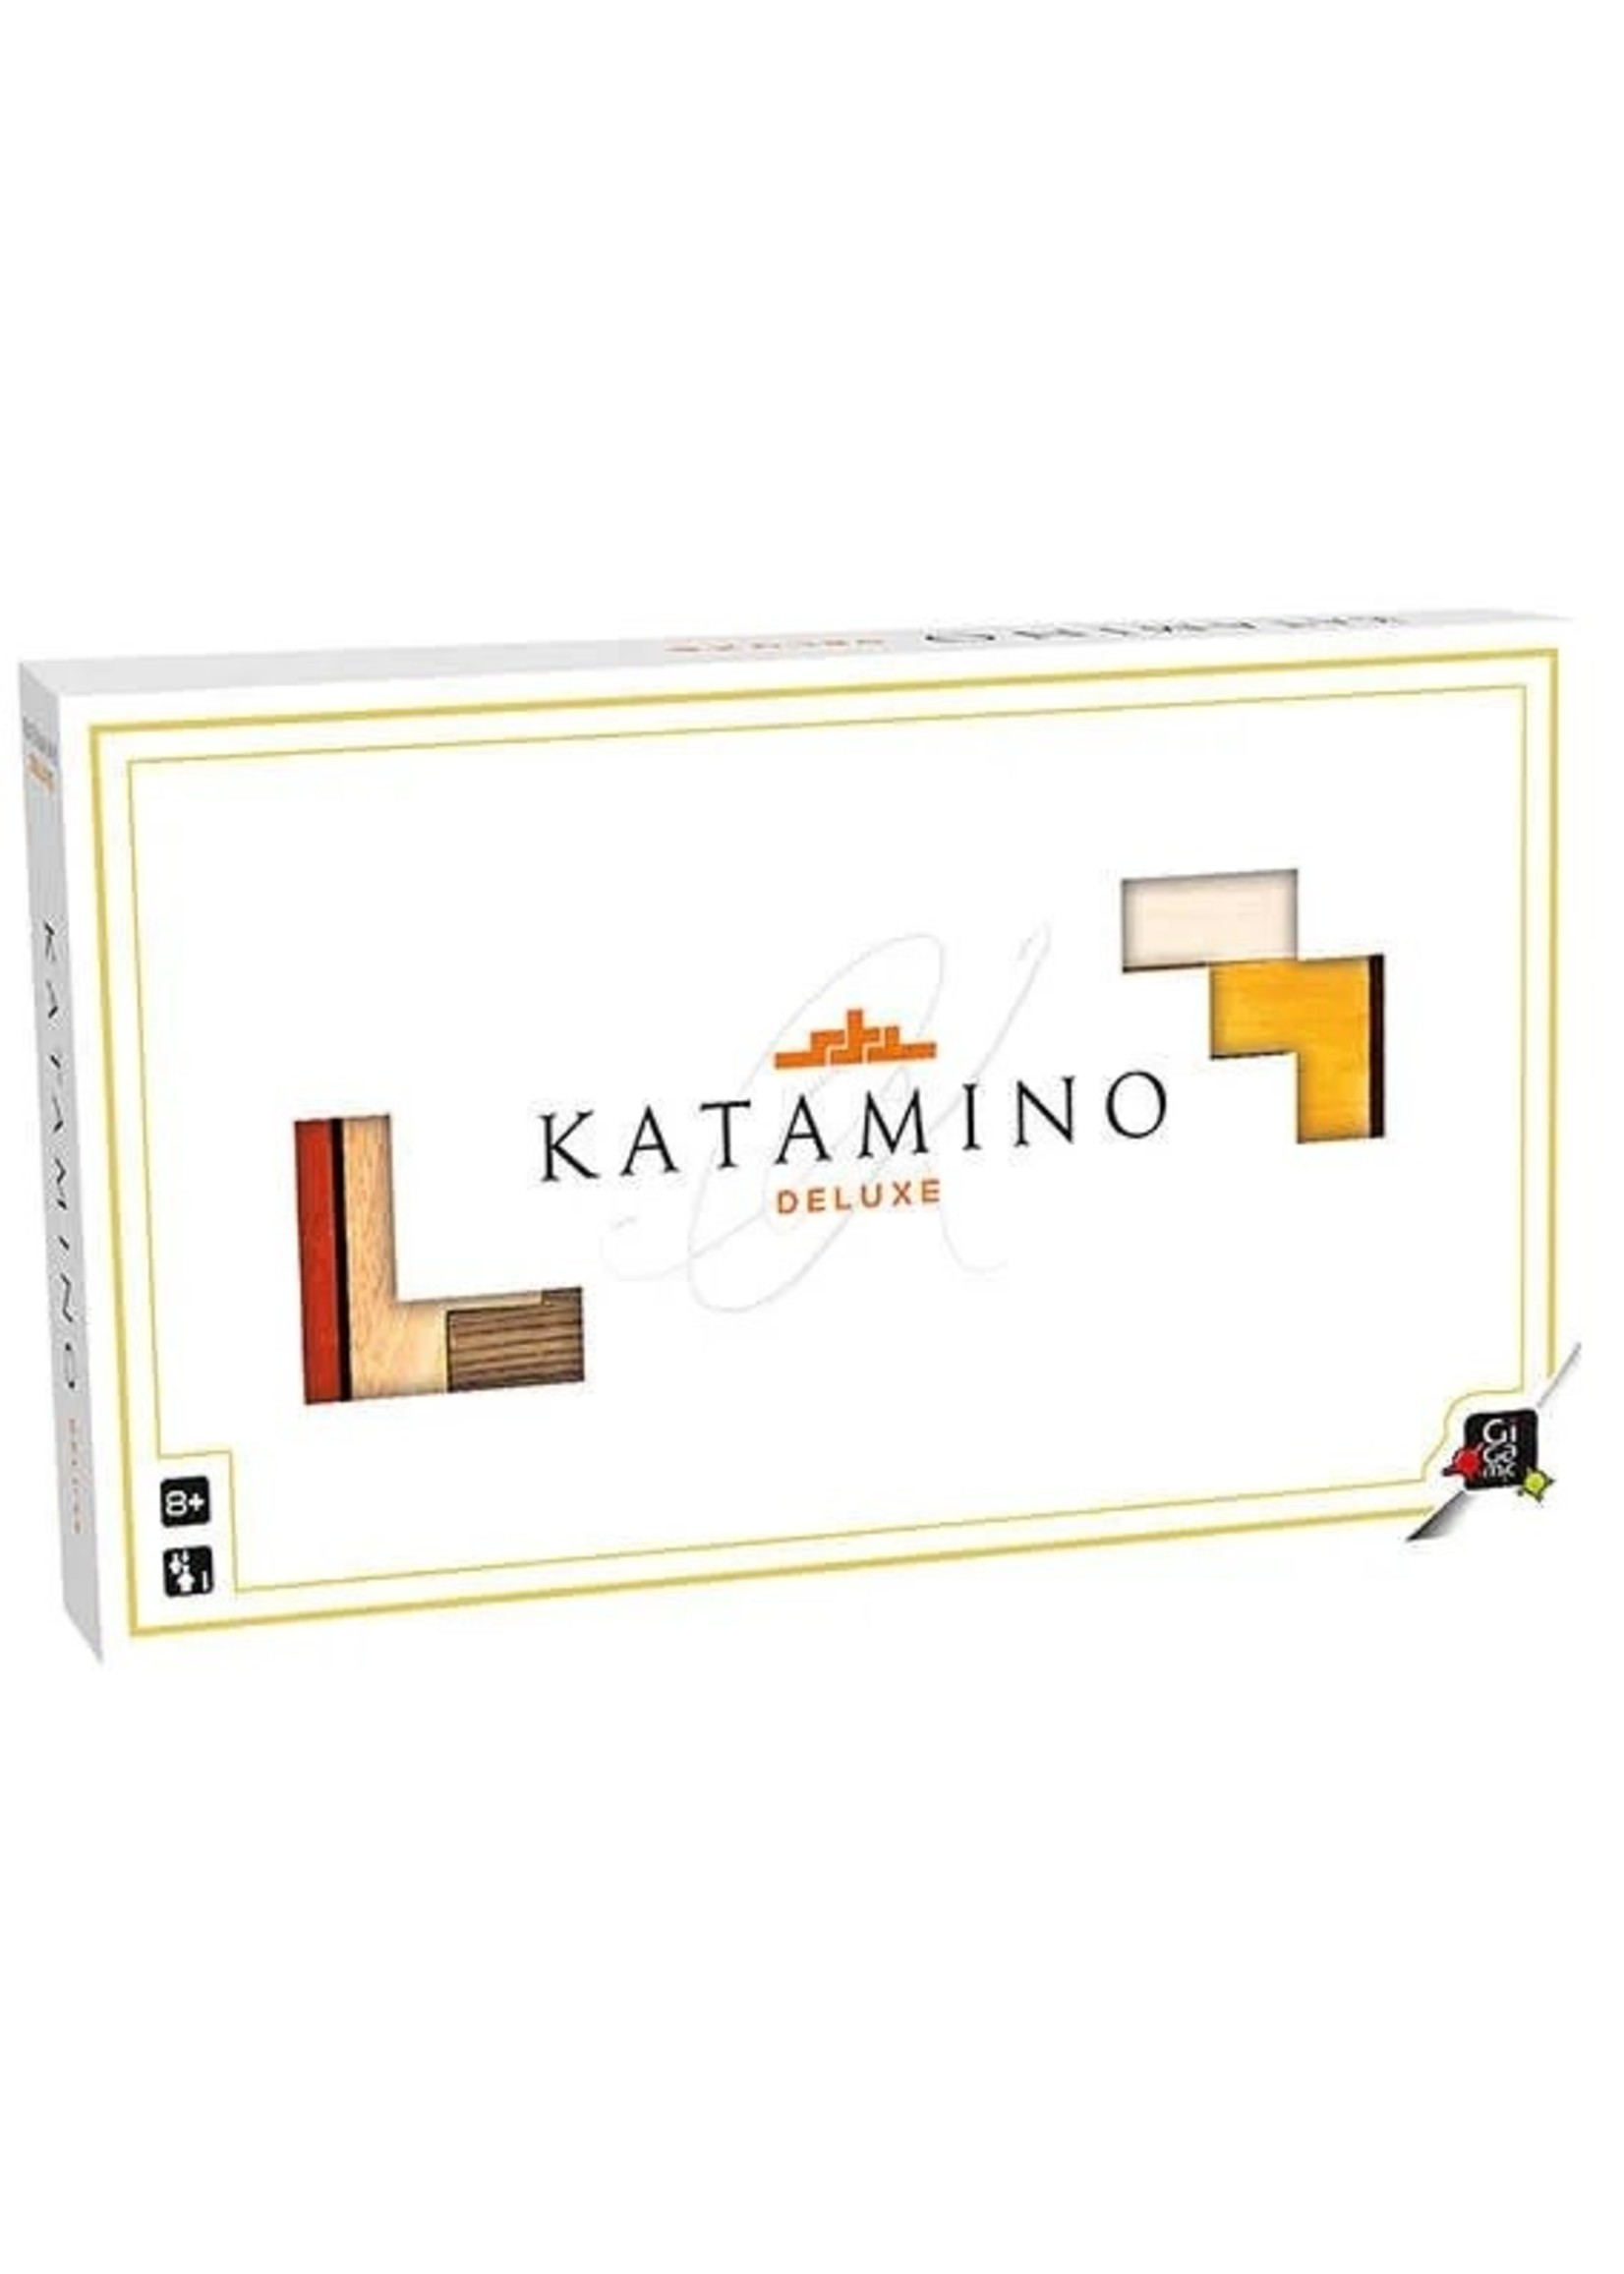 Gigamic Katamino